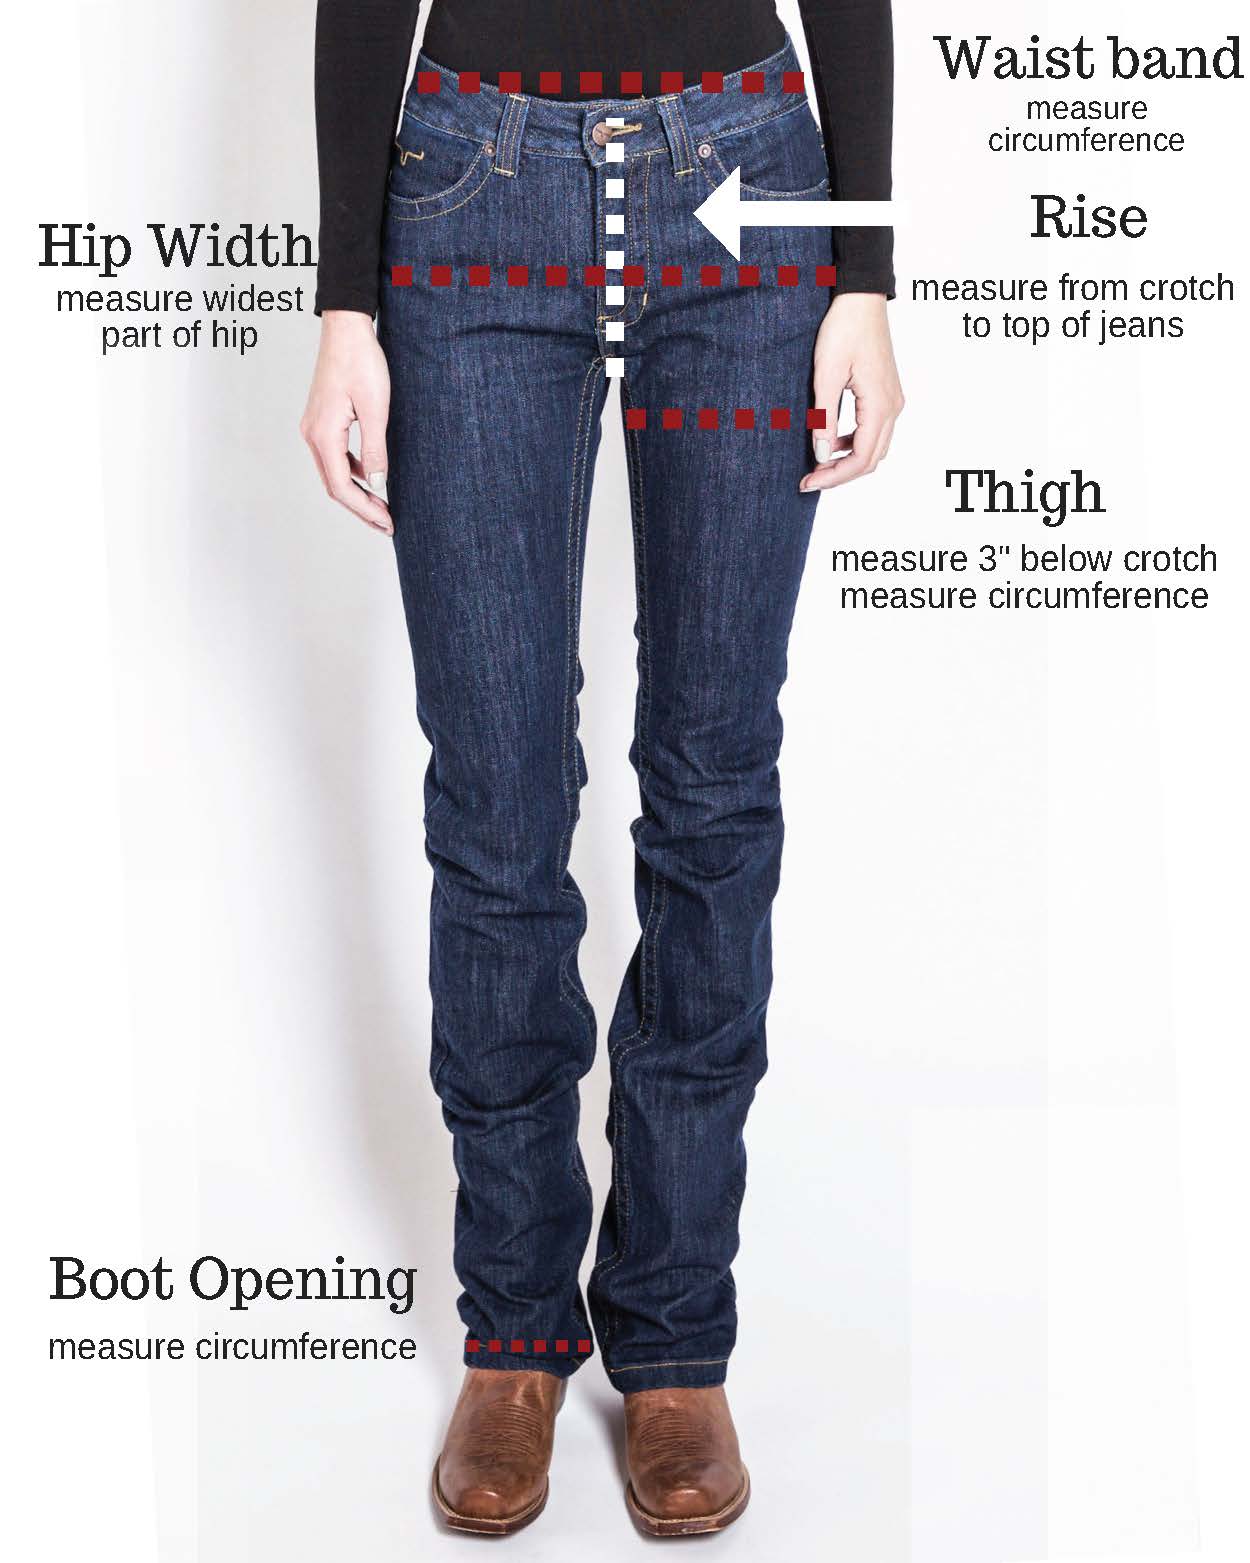 Kimes Ranch Women S Jeans Size Chart